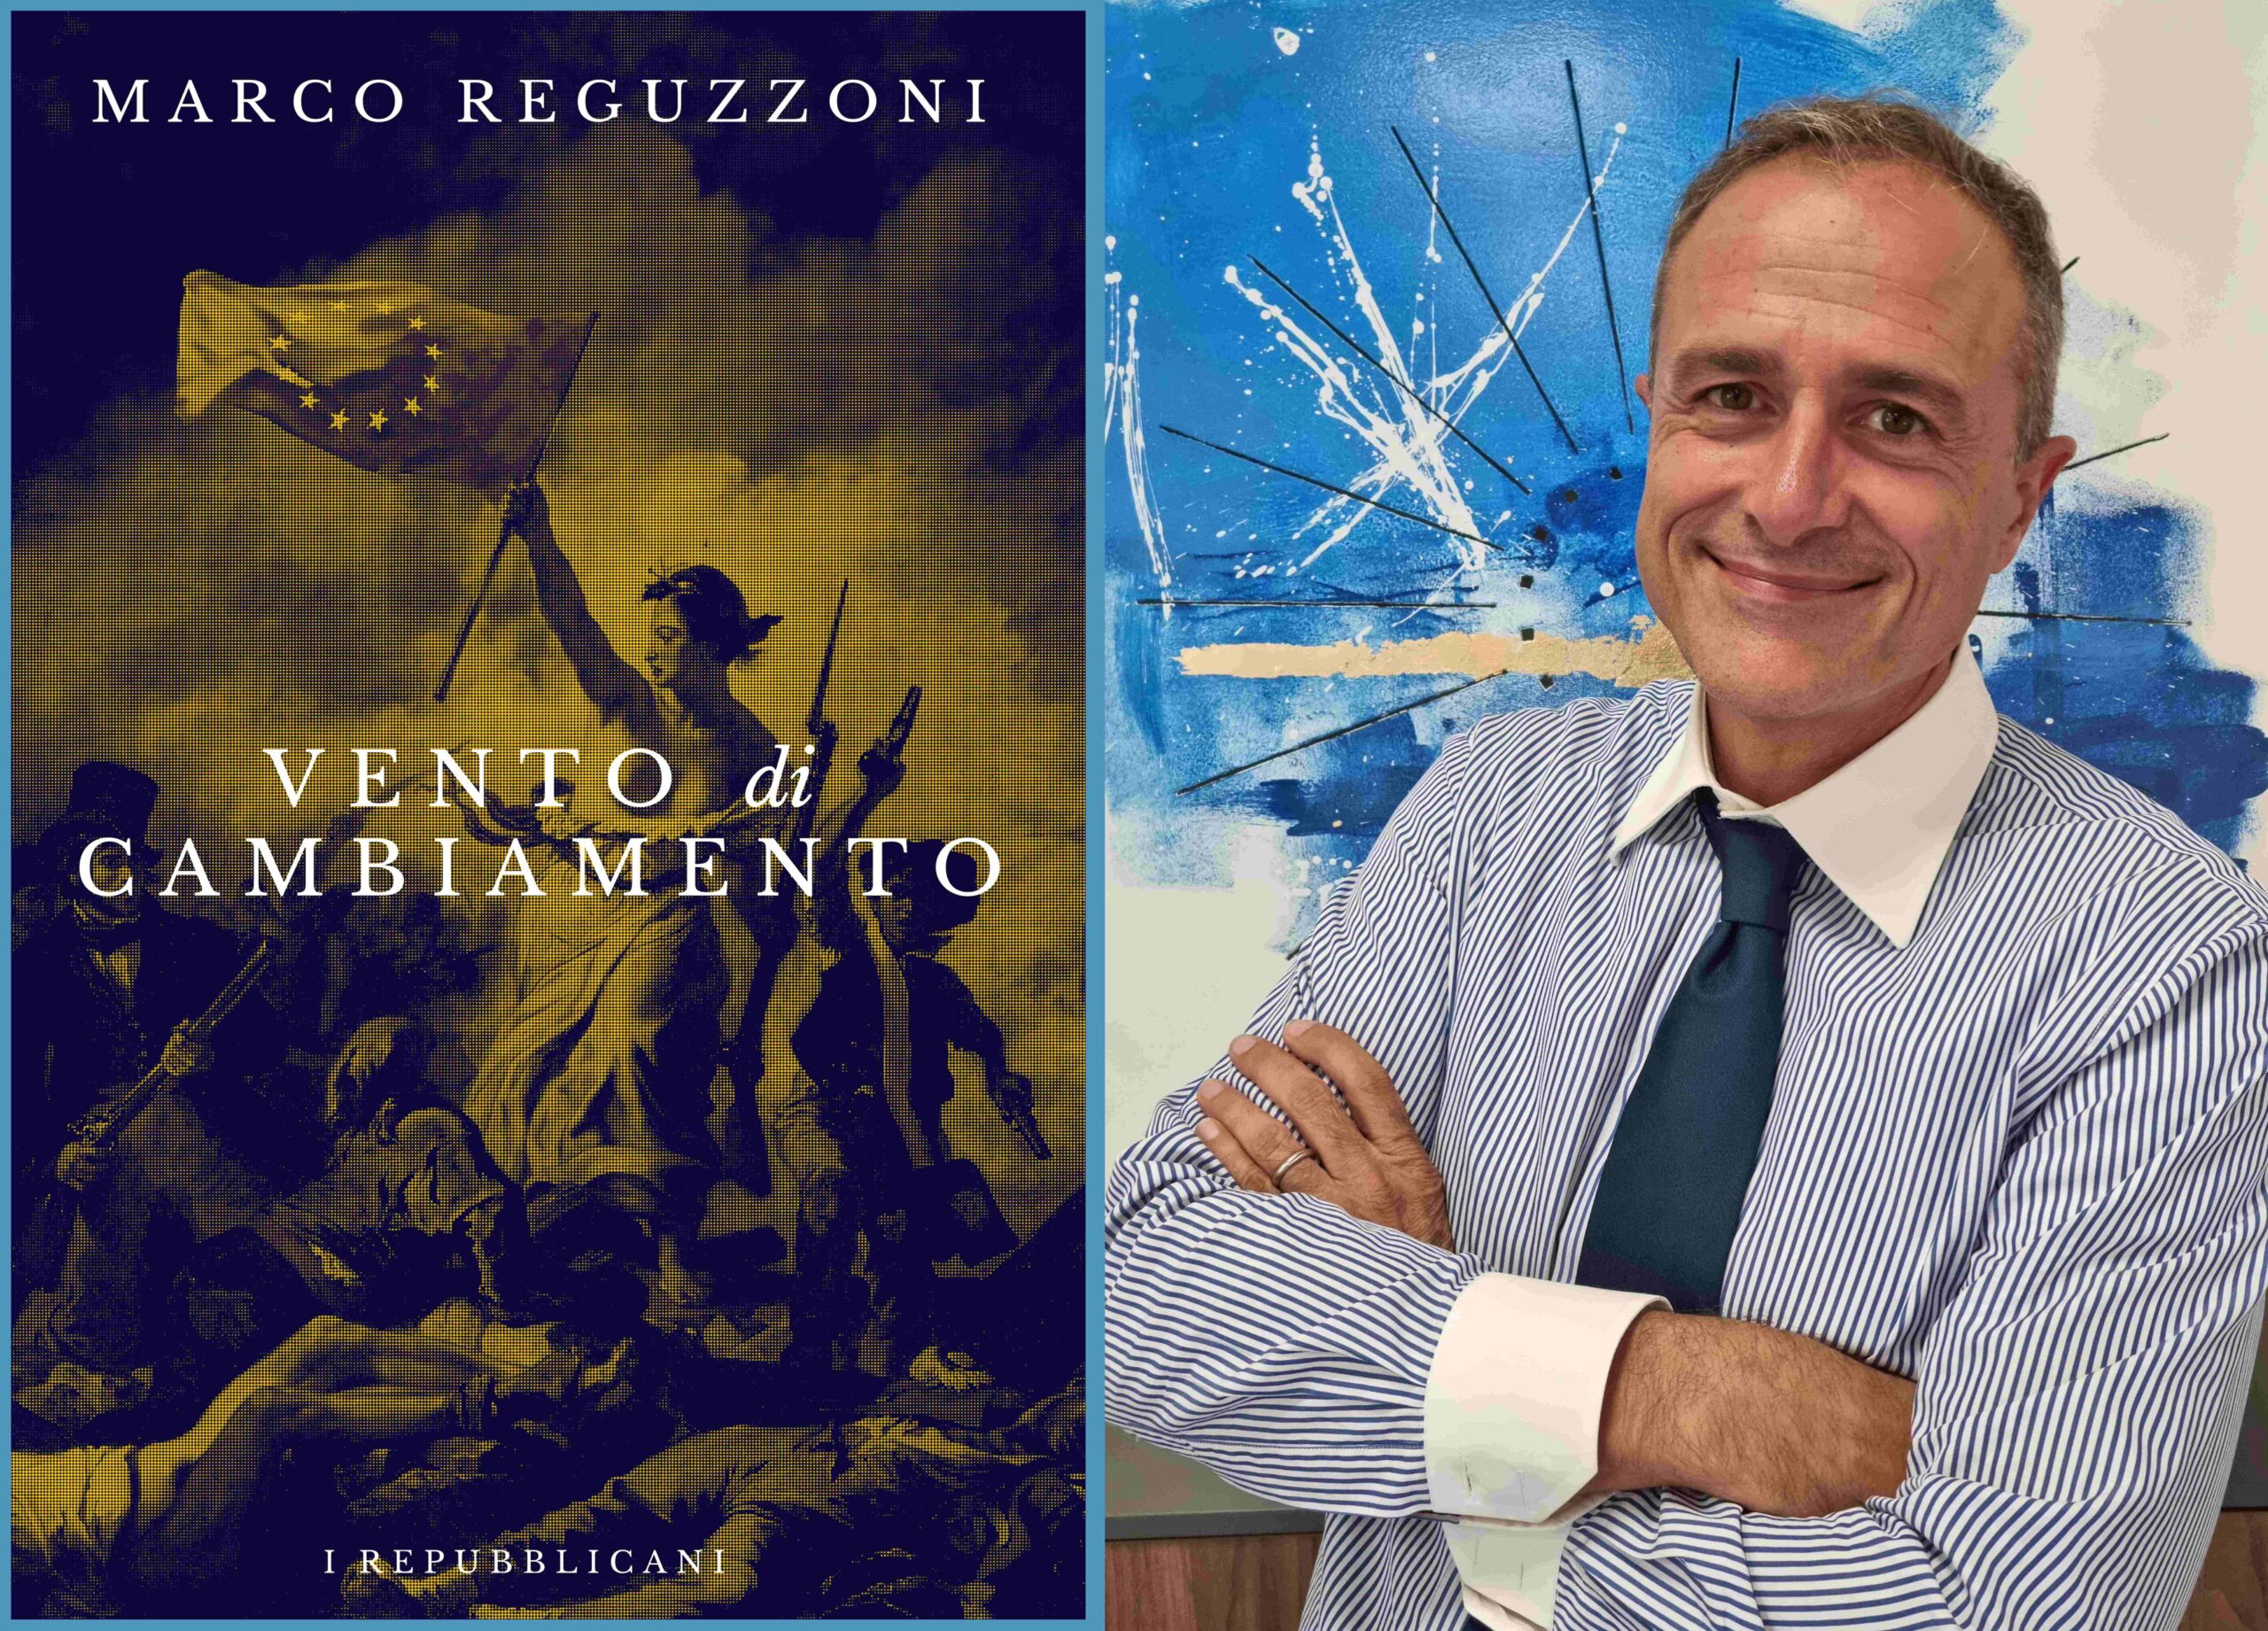 Esce "Vento di cambiamento", il libro di Marco Reguzzoni: «Non lasciamo che  ci rubino i sogni» - MEGA